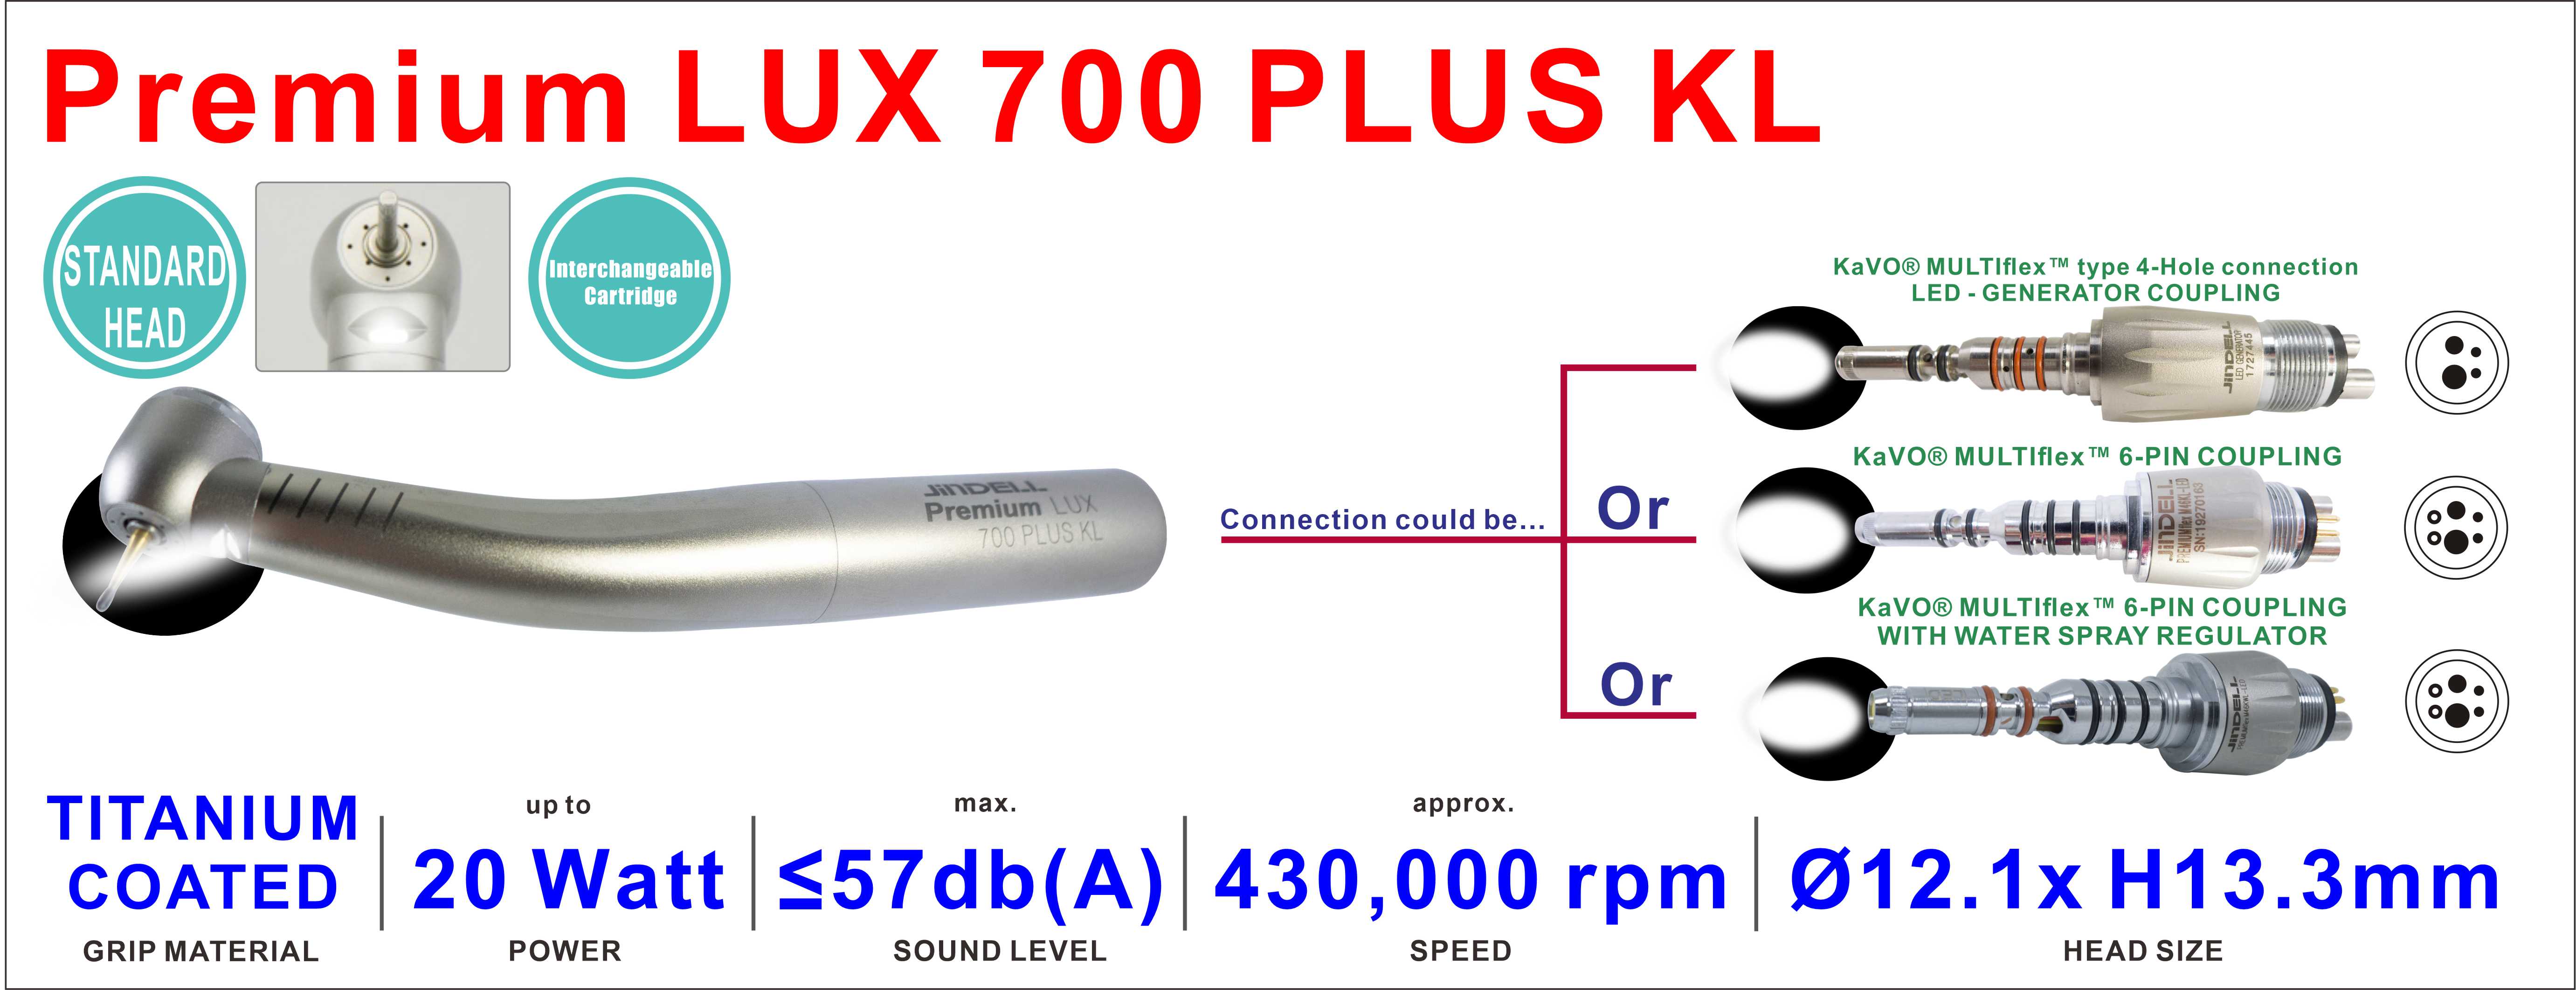 Premium LUX 700 PLUS KL